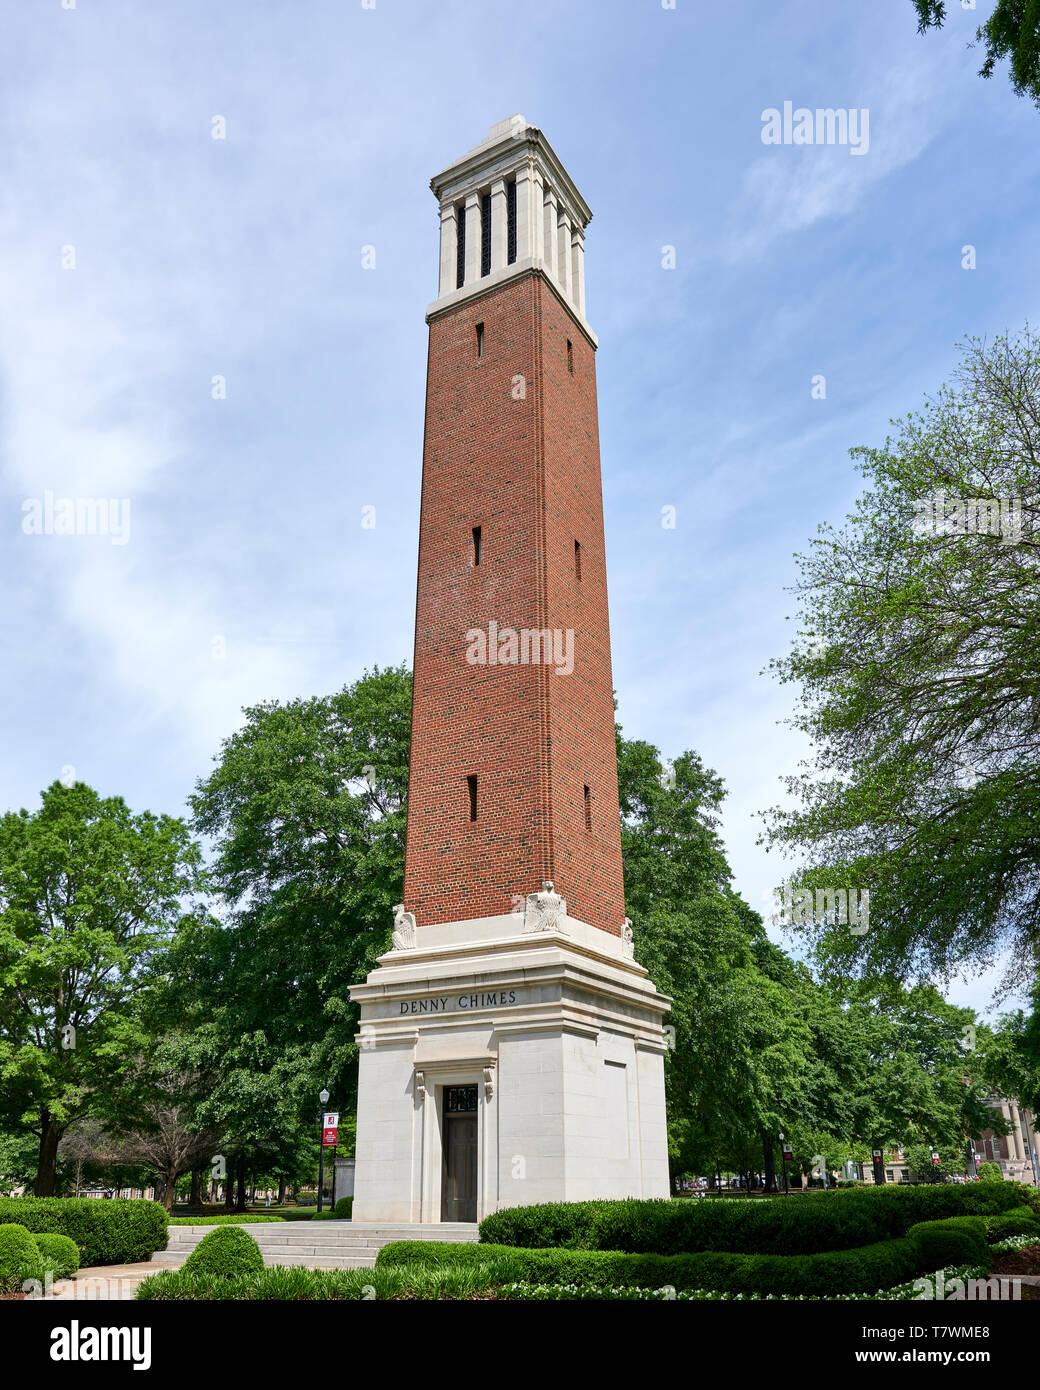 Denny Chimes Tower auf dem Quad an der Universität von Alabama in Tuscaloosa Alabama, USA. Stockfoto